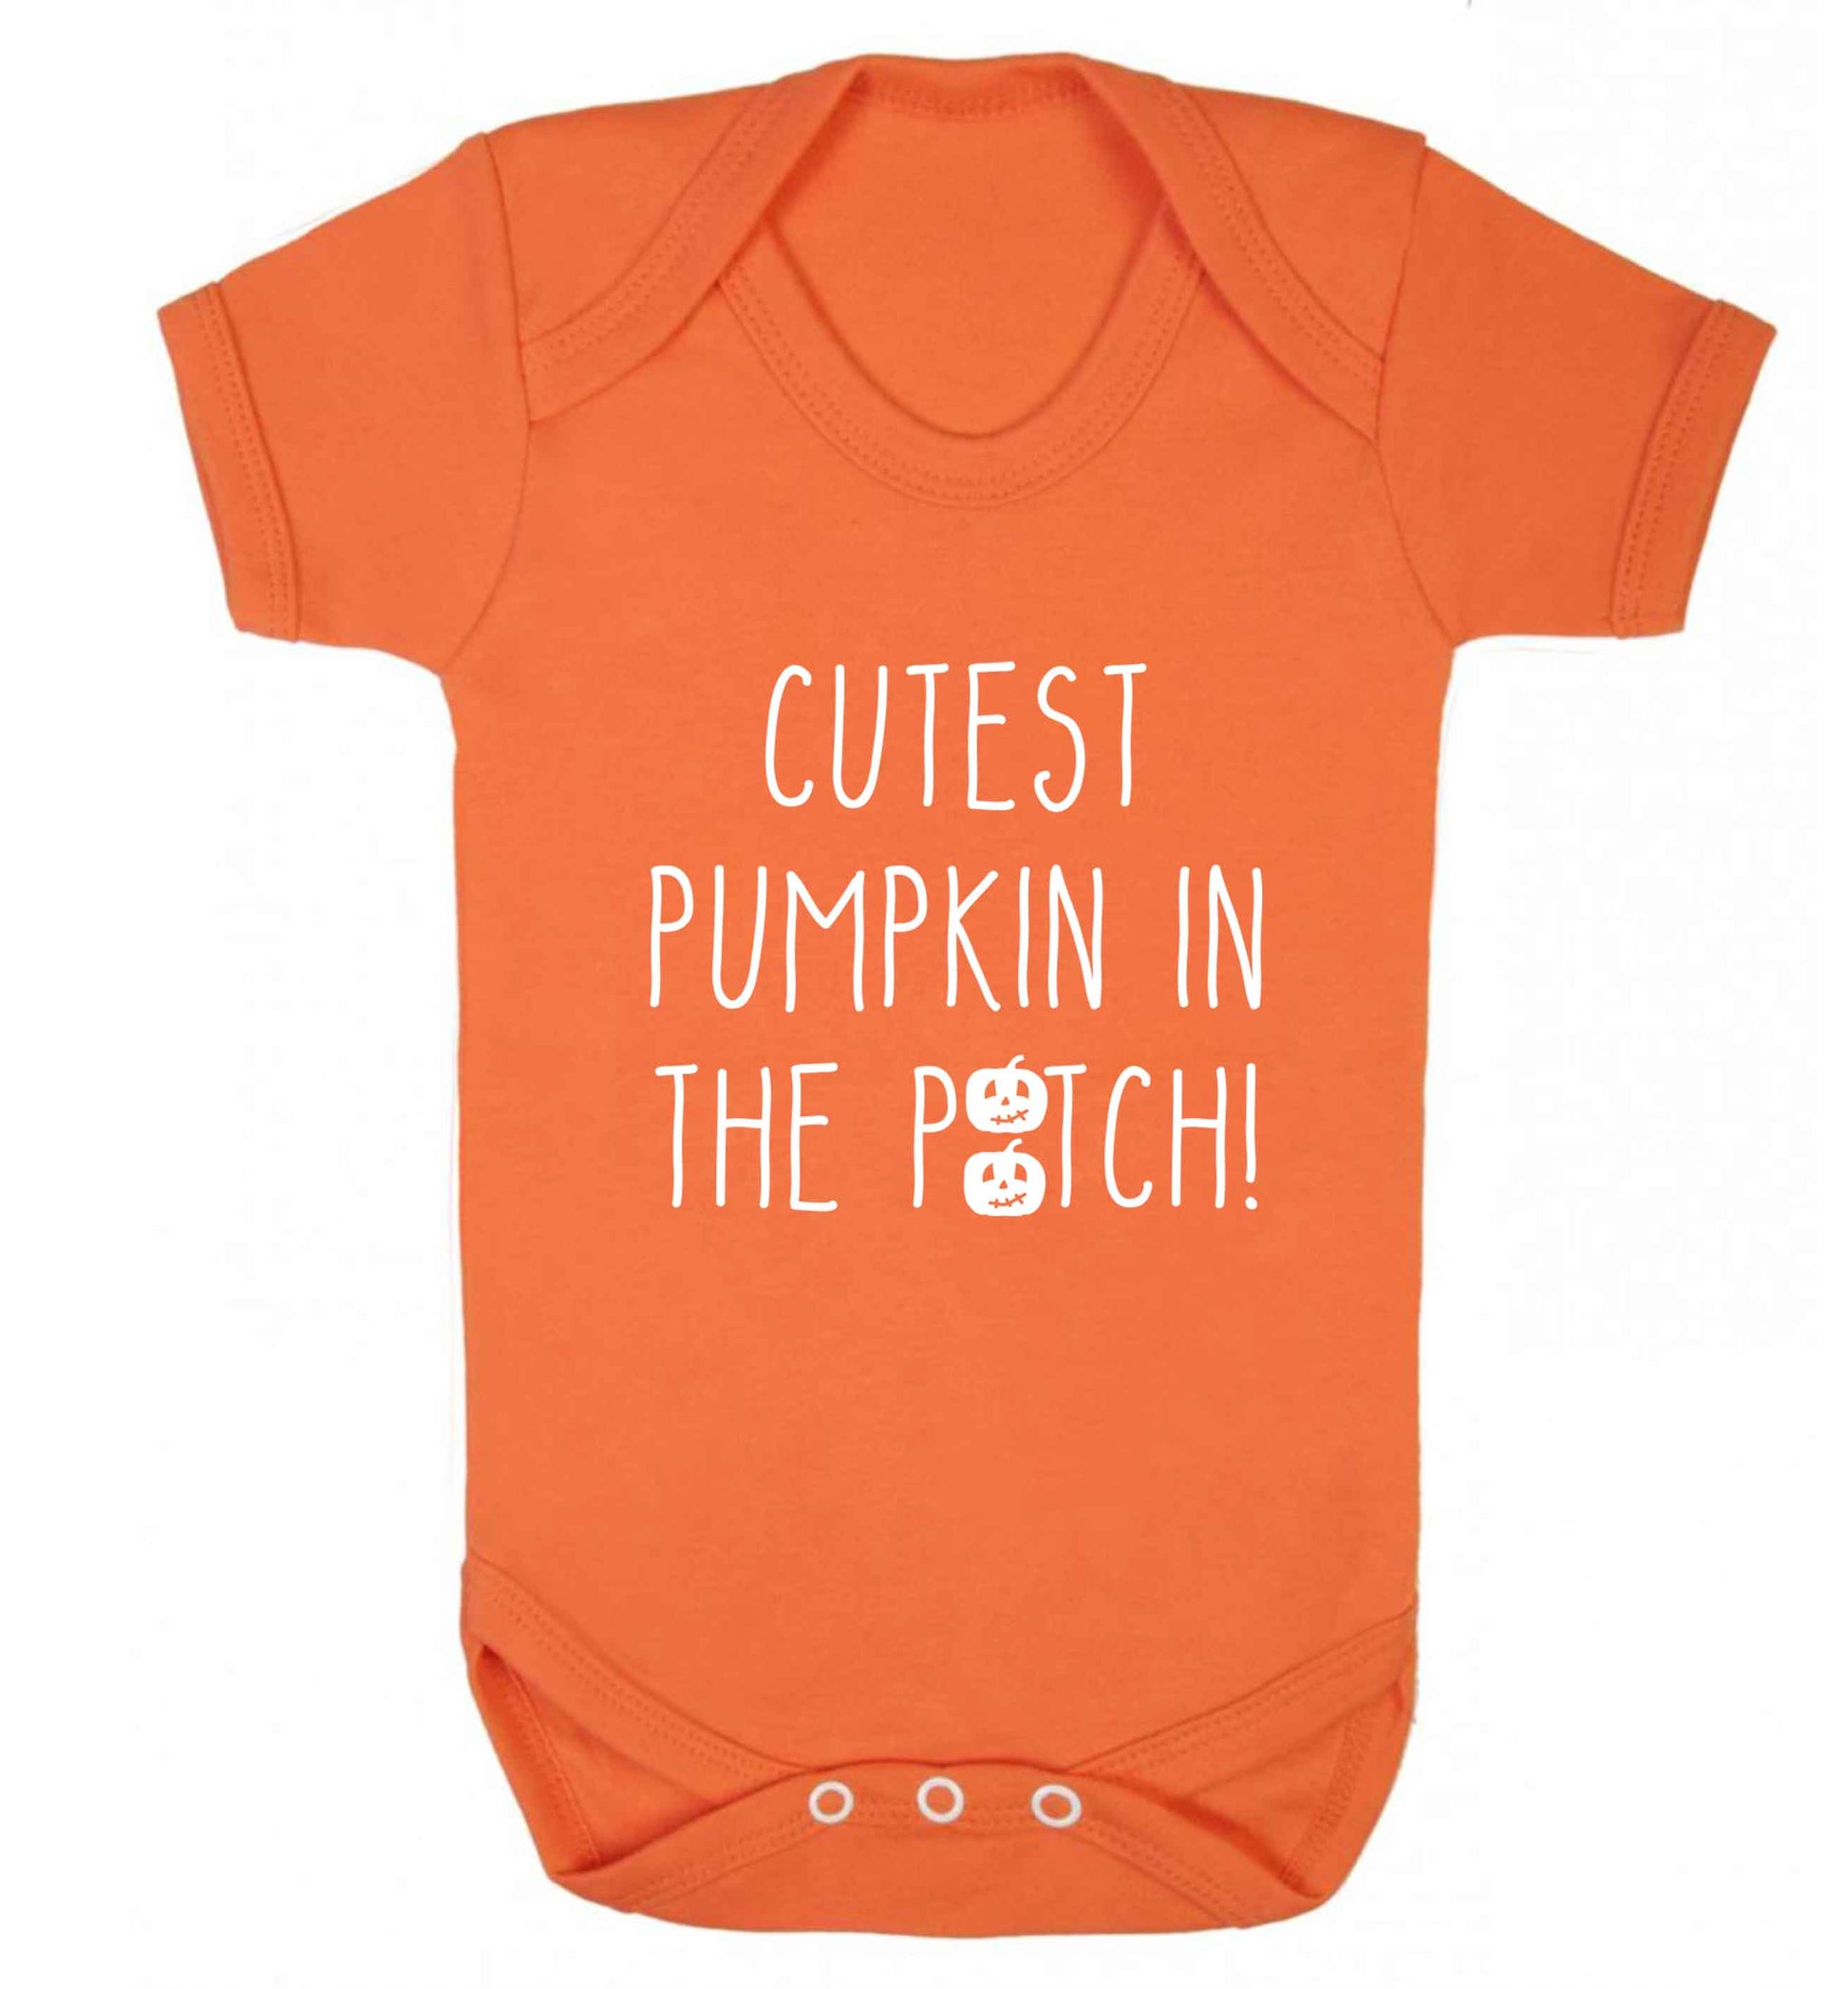 Calm Pumpkin Season baby vest orange 18-24 months